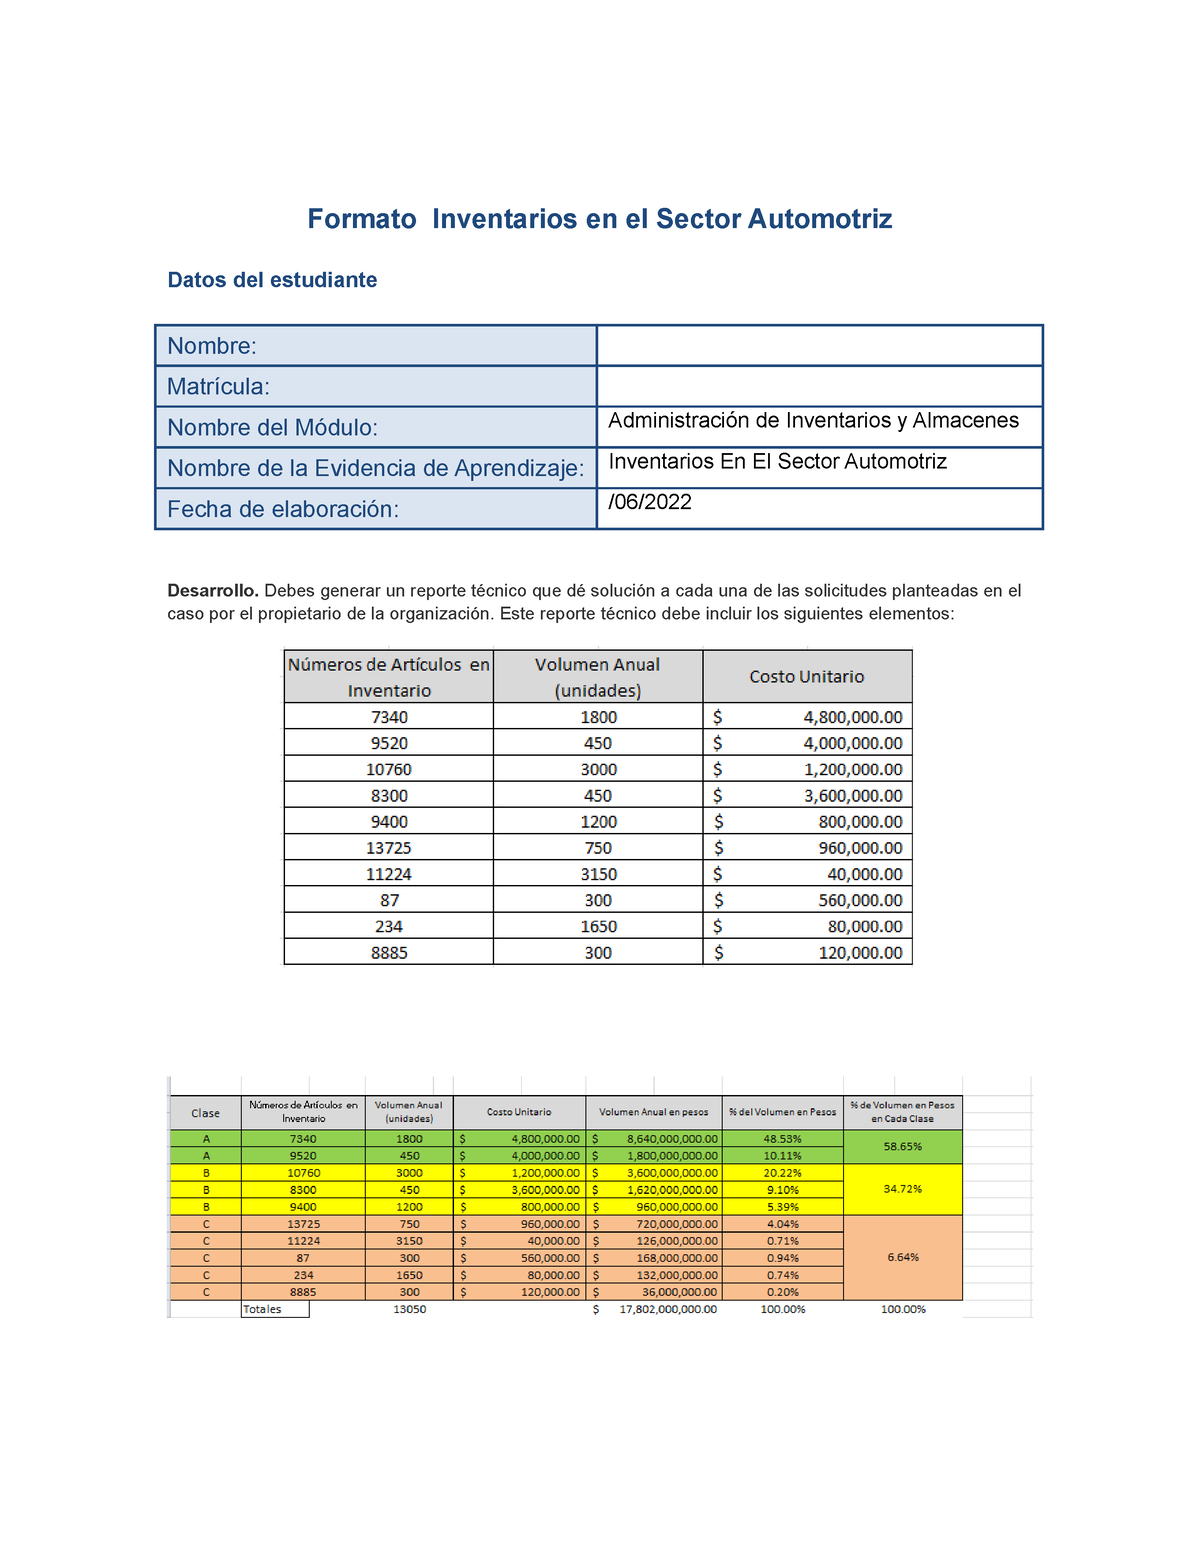 Inventario En El Sector Automotriz Ea 2 Formato Inventarios En El Sector Automotriz Datos Del 8012